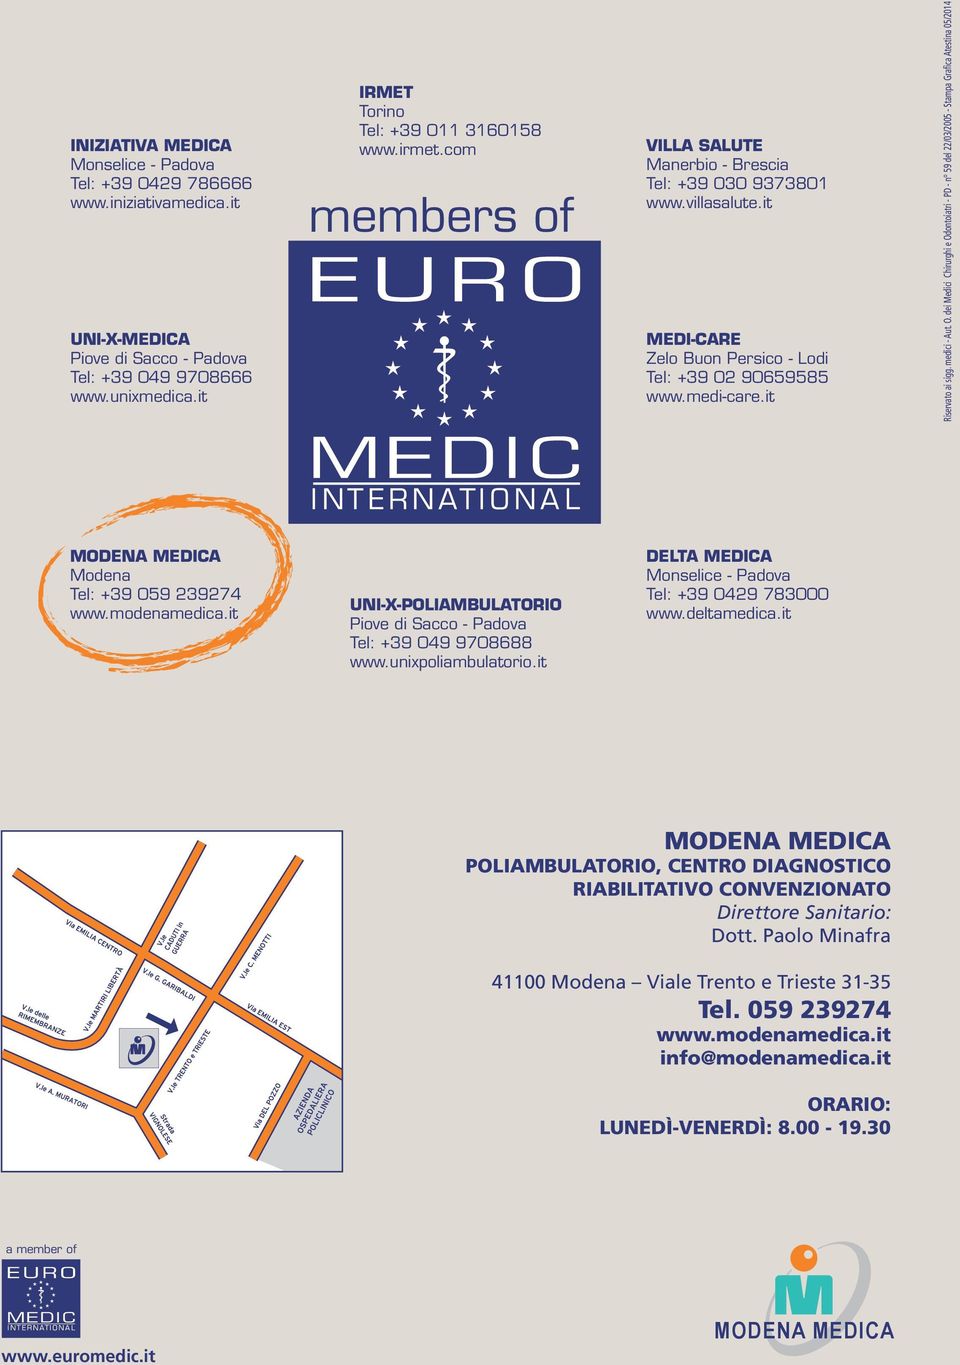 O. dei Medici Chirurghi e Odontoiatri - PD - n 59 del 22/03/2005 - Stampa Grafica Atestina 05/2014 Modena Tel: +39 059 239274 www.modenamedica.